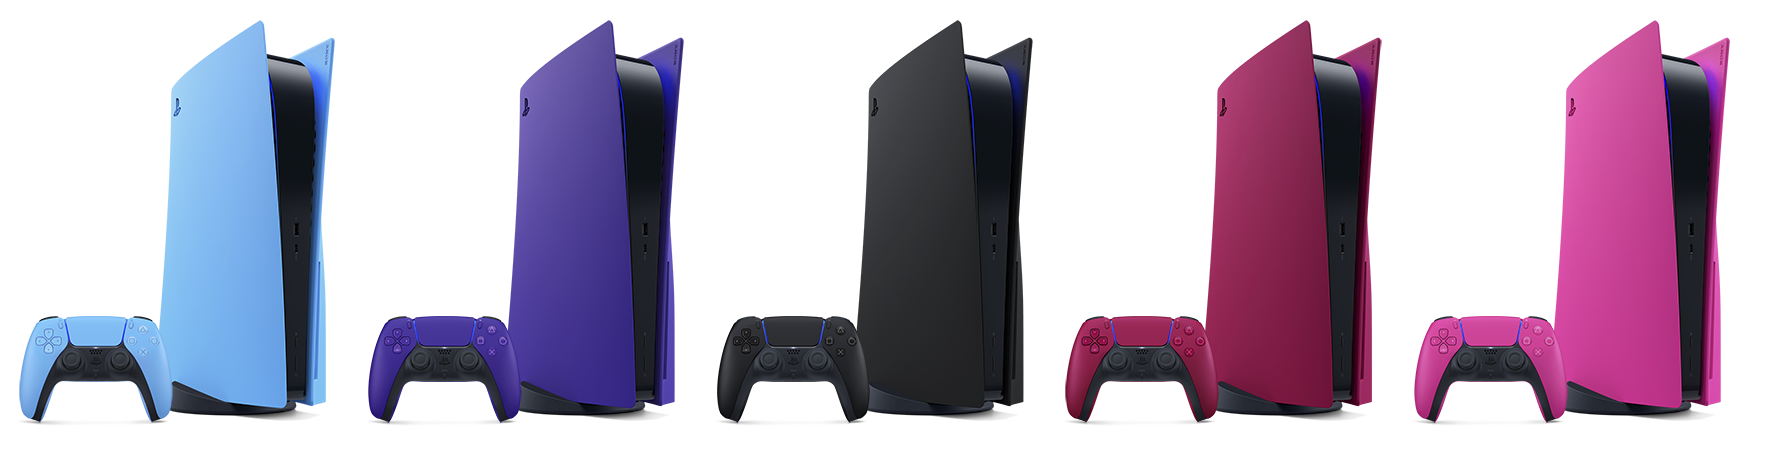 五種不同顏色的PS5護蓋